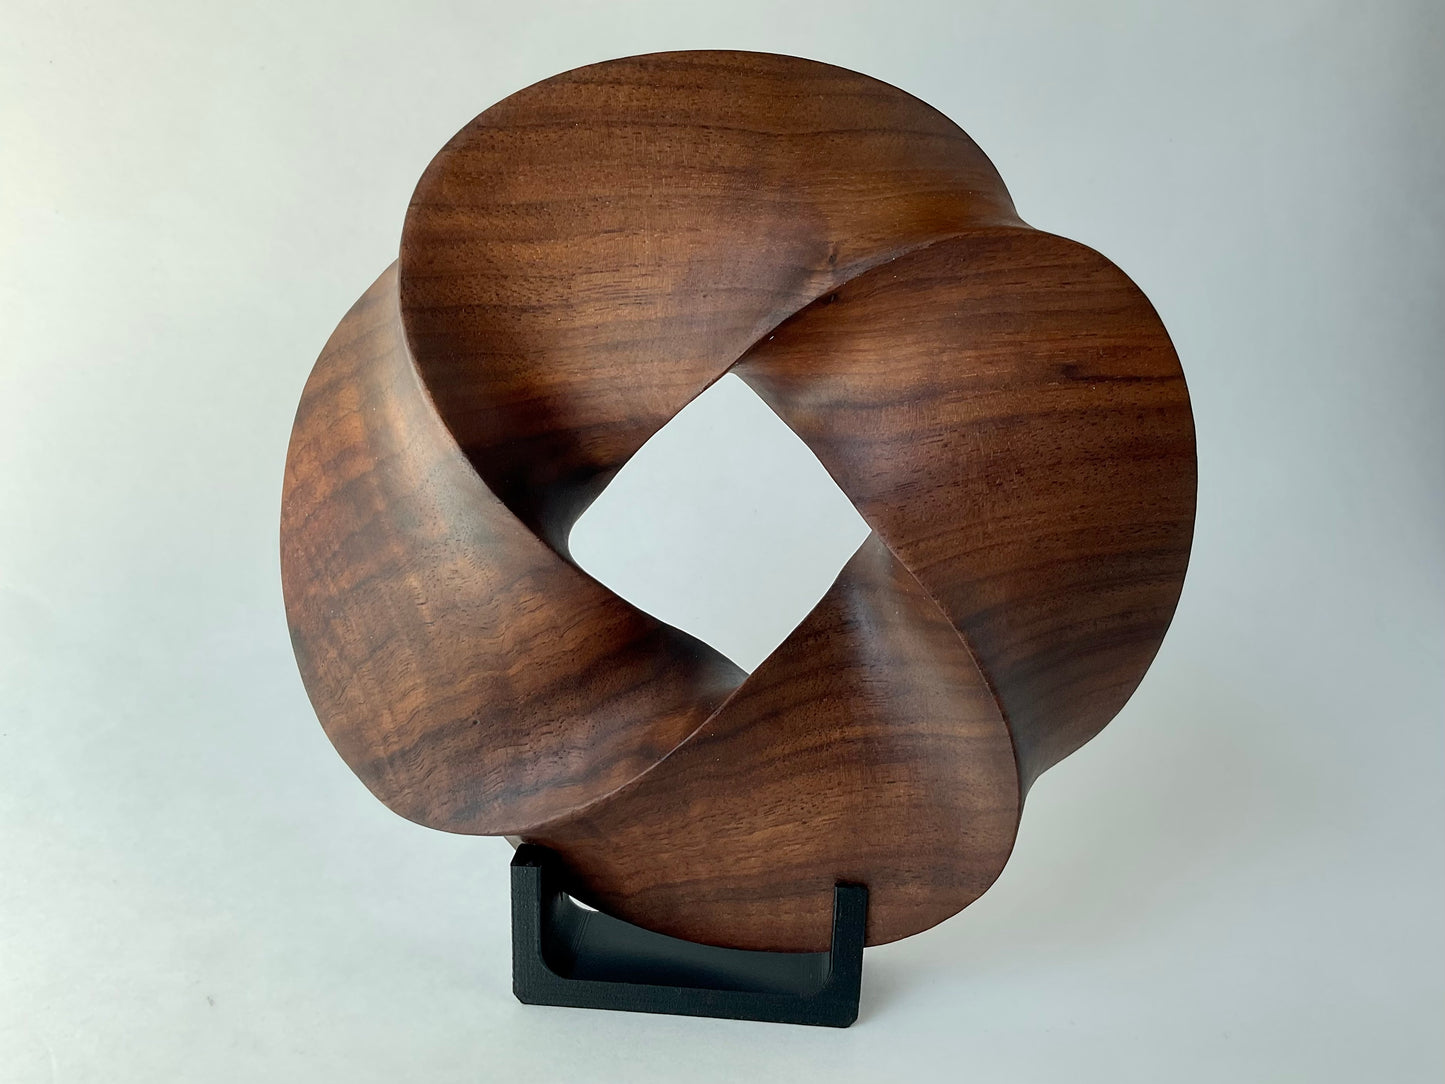 Quadruple-folded Möbius Strip-like Walnut Wood Carving, 7" diameter